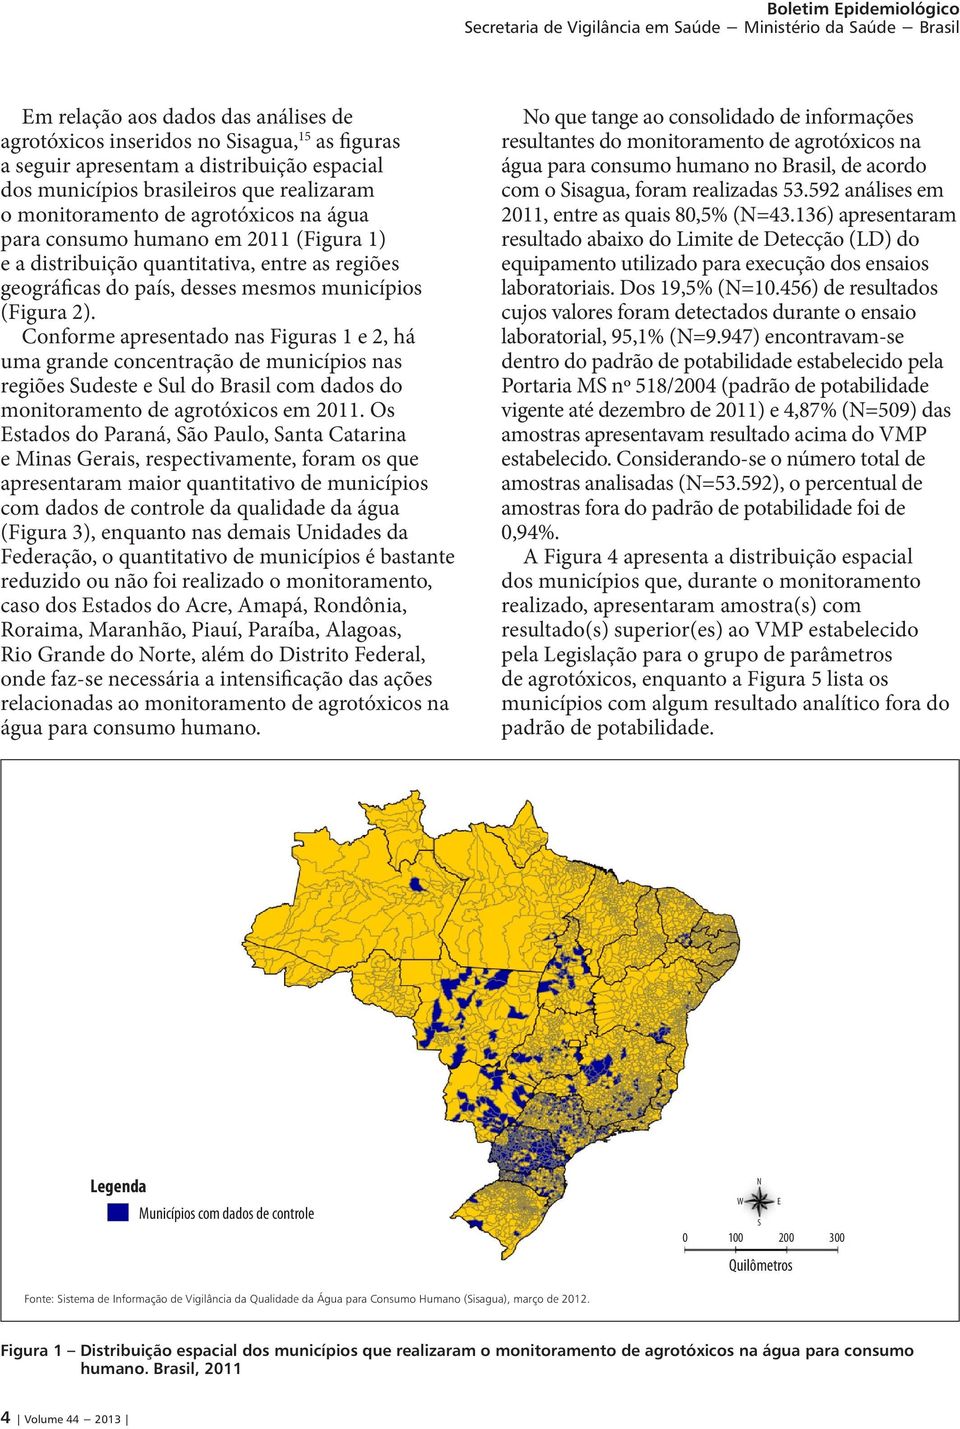 Conforme apresentado nas Figuras 1 e 2, há uma grande concentração de municípios nas regiões Sudeste e Sul do Brasil com dados do monitoramento de agrotóxicos em 2011.